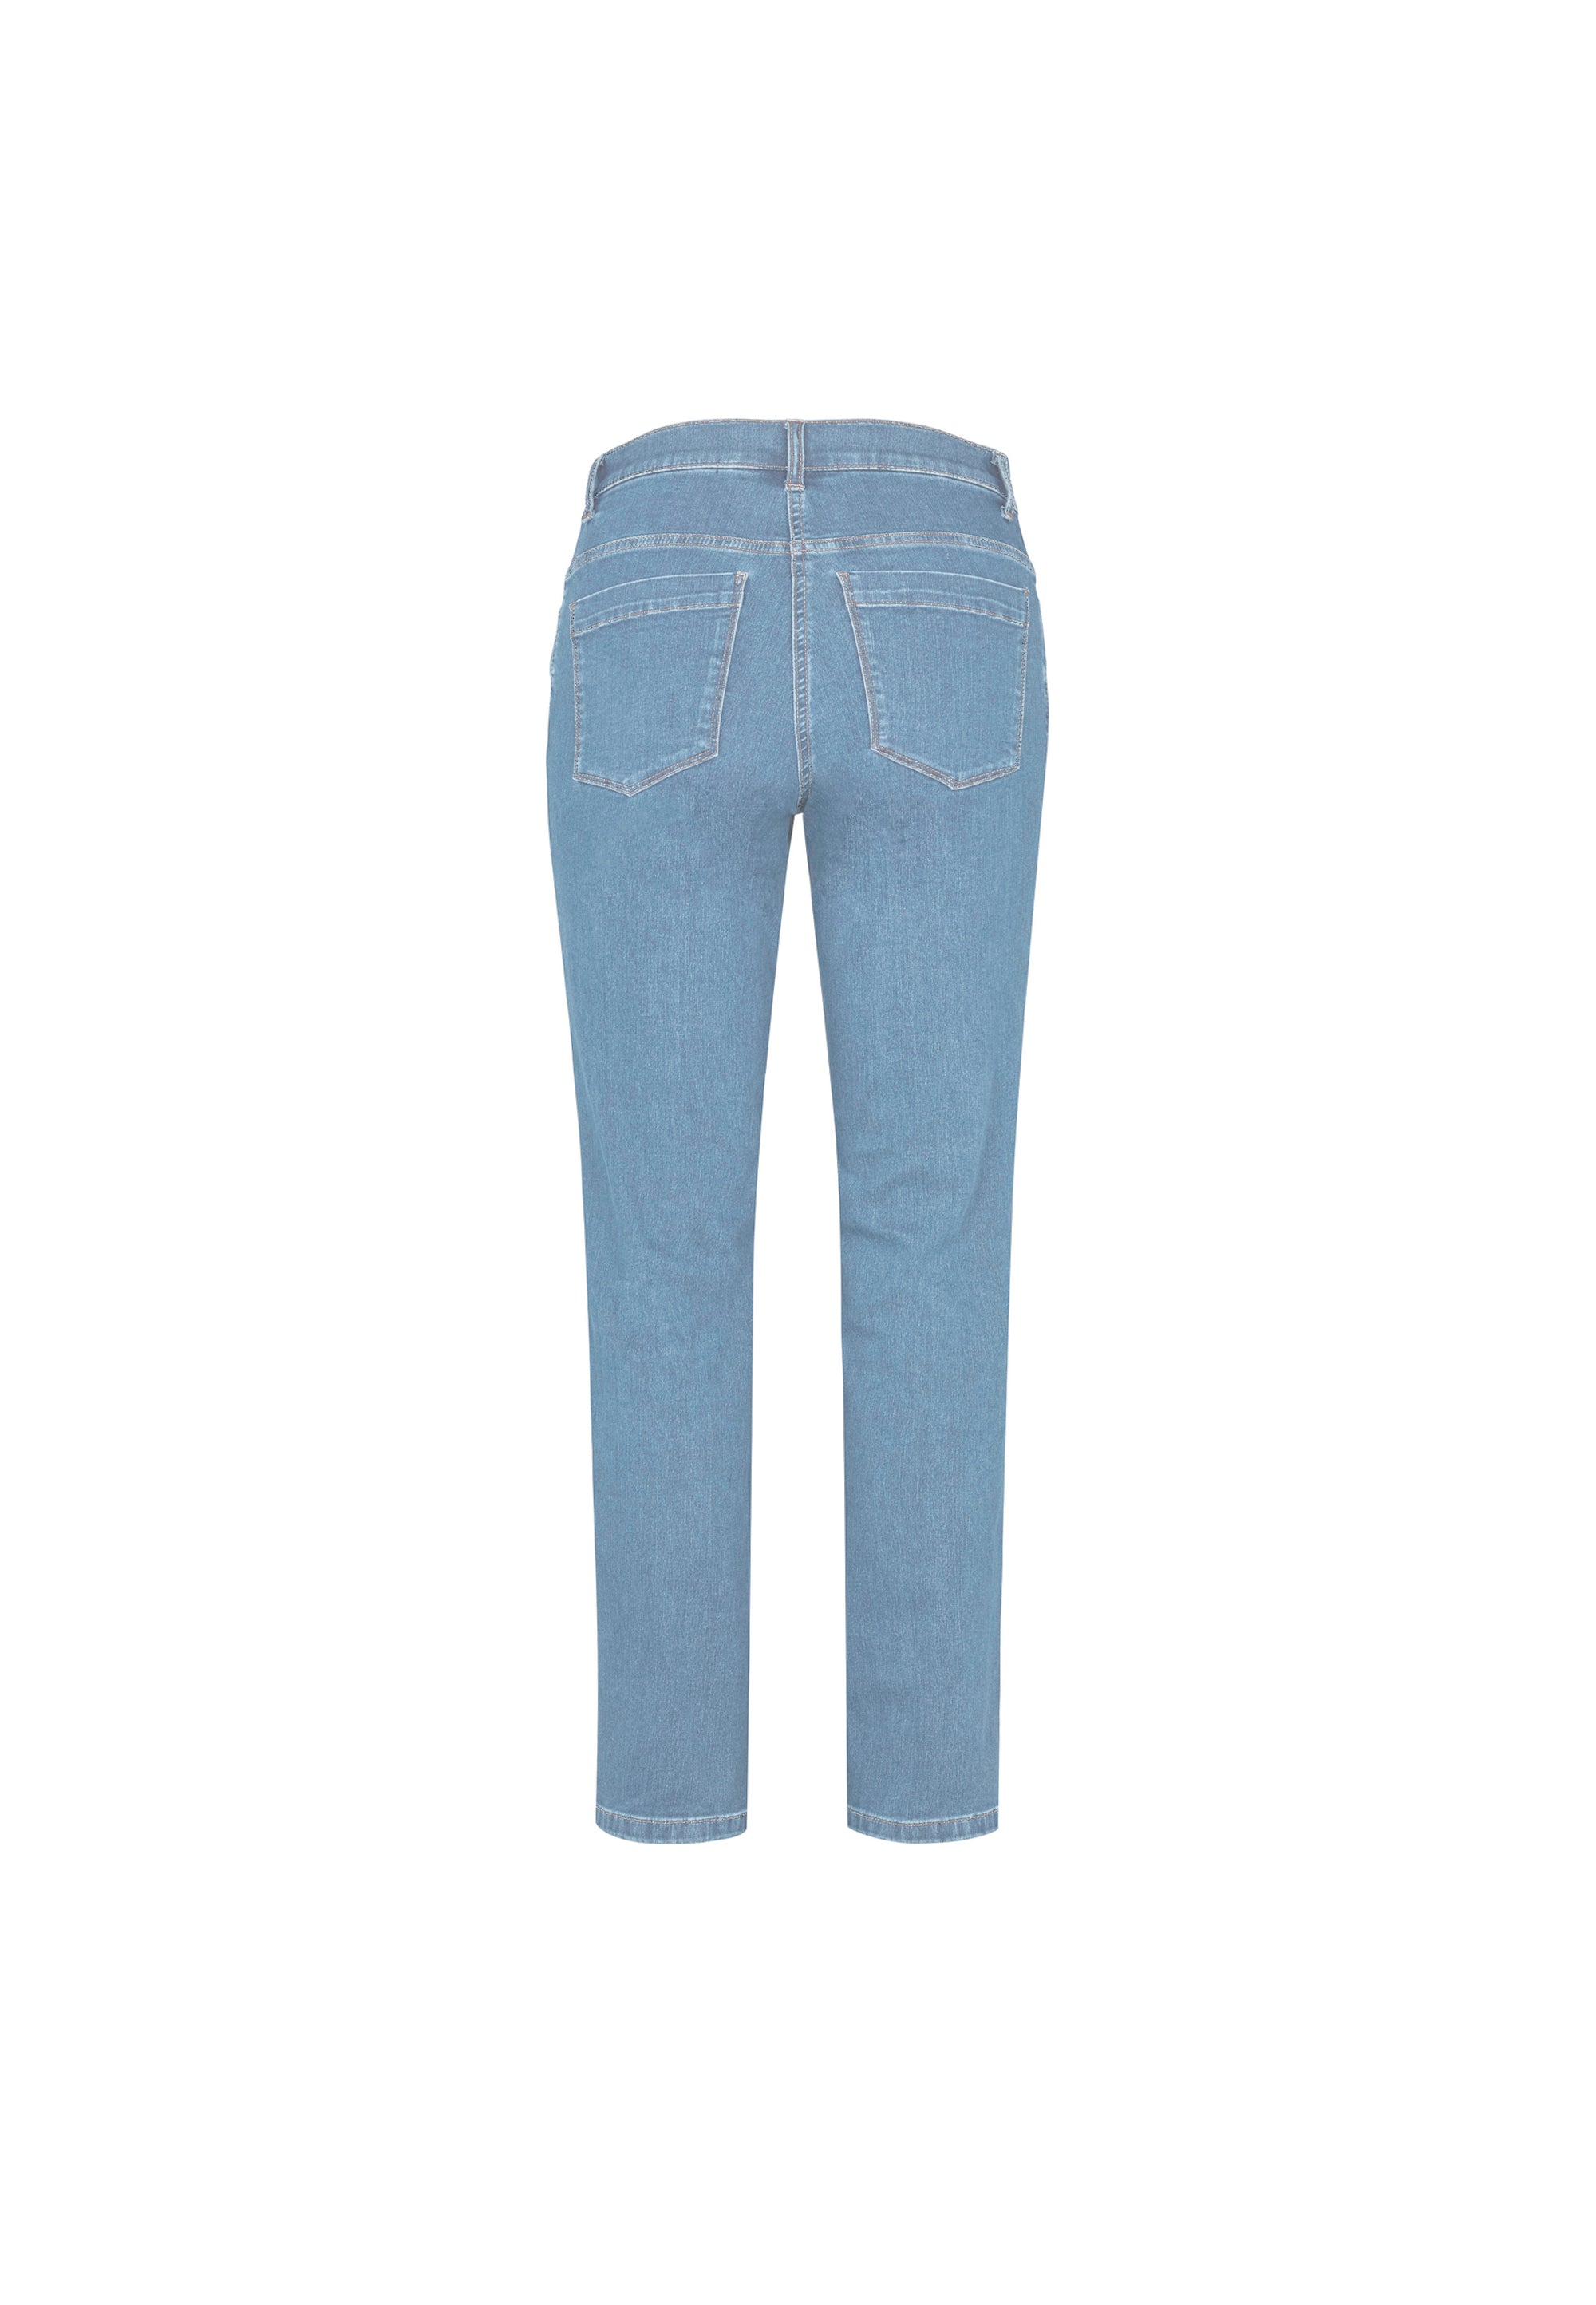 LAURIE Charlotte Regular - Medium Length Trousers REGULAR 49301 Light Blue Denim